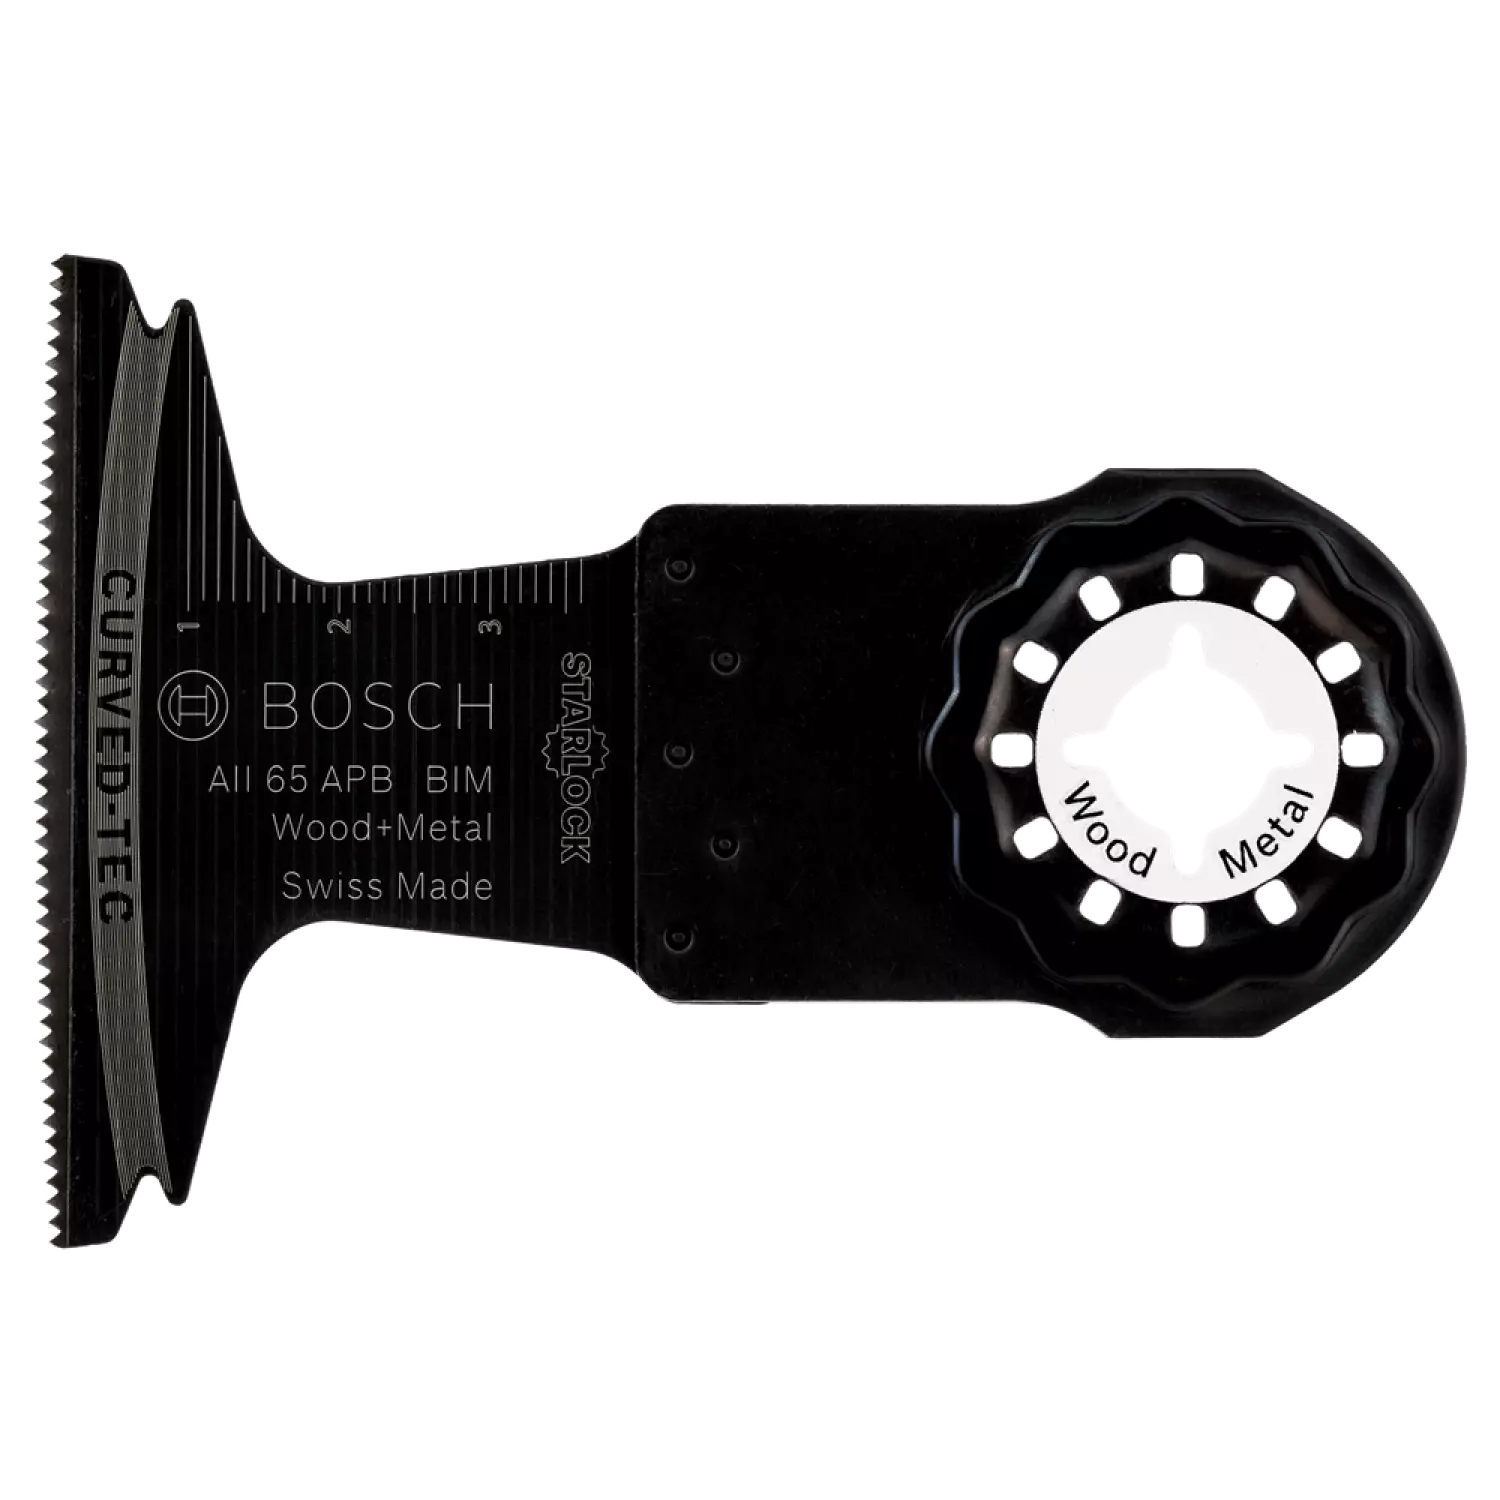 Bosch 2608661907 - Starlock AII 65 APB BIM, Wood+Metal, Curved-Tec 65 x 40 5x